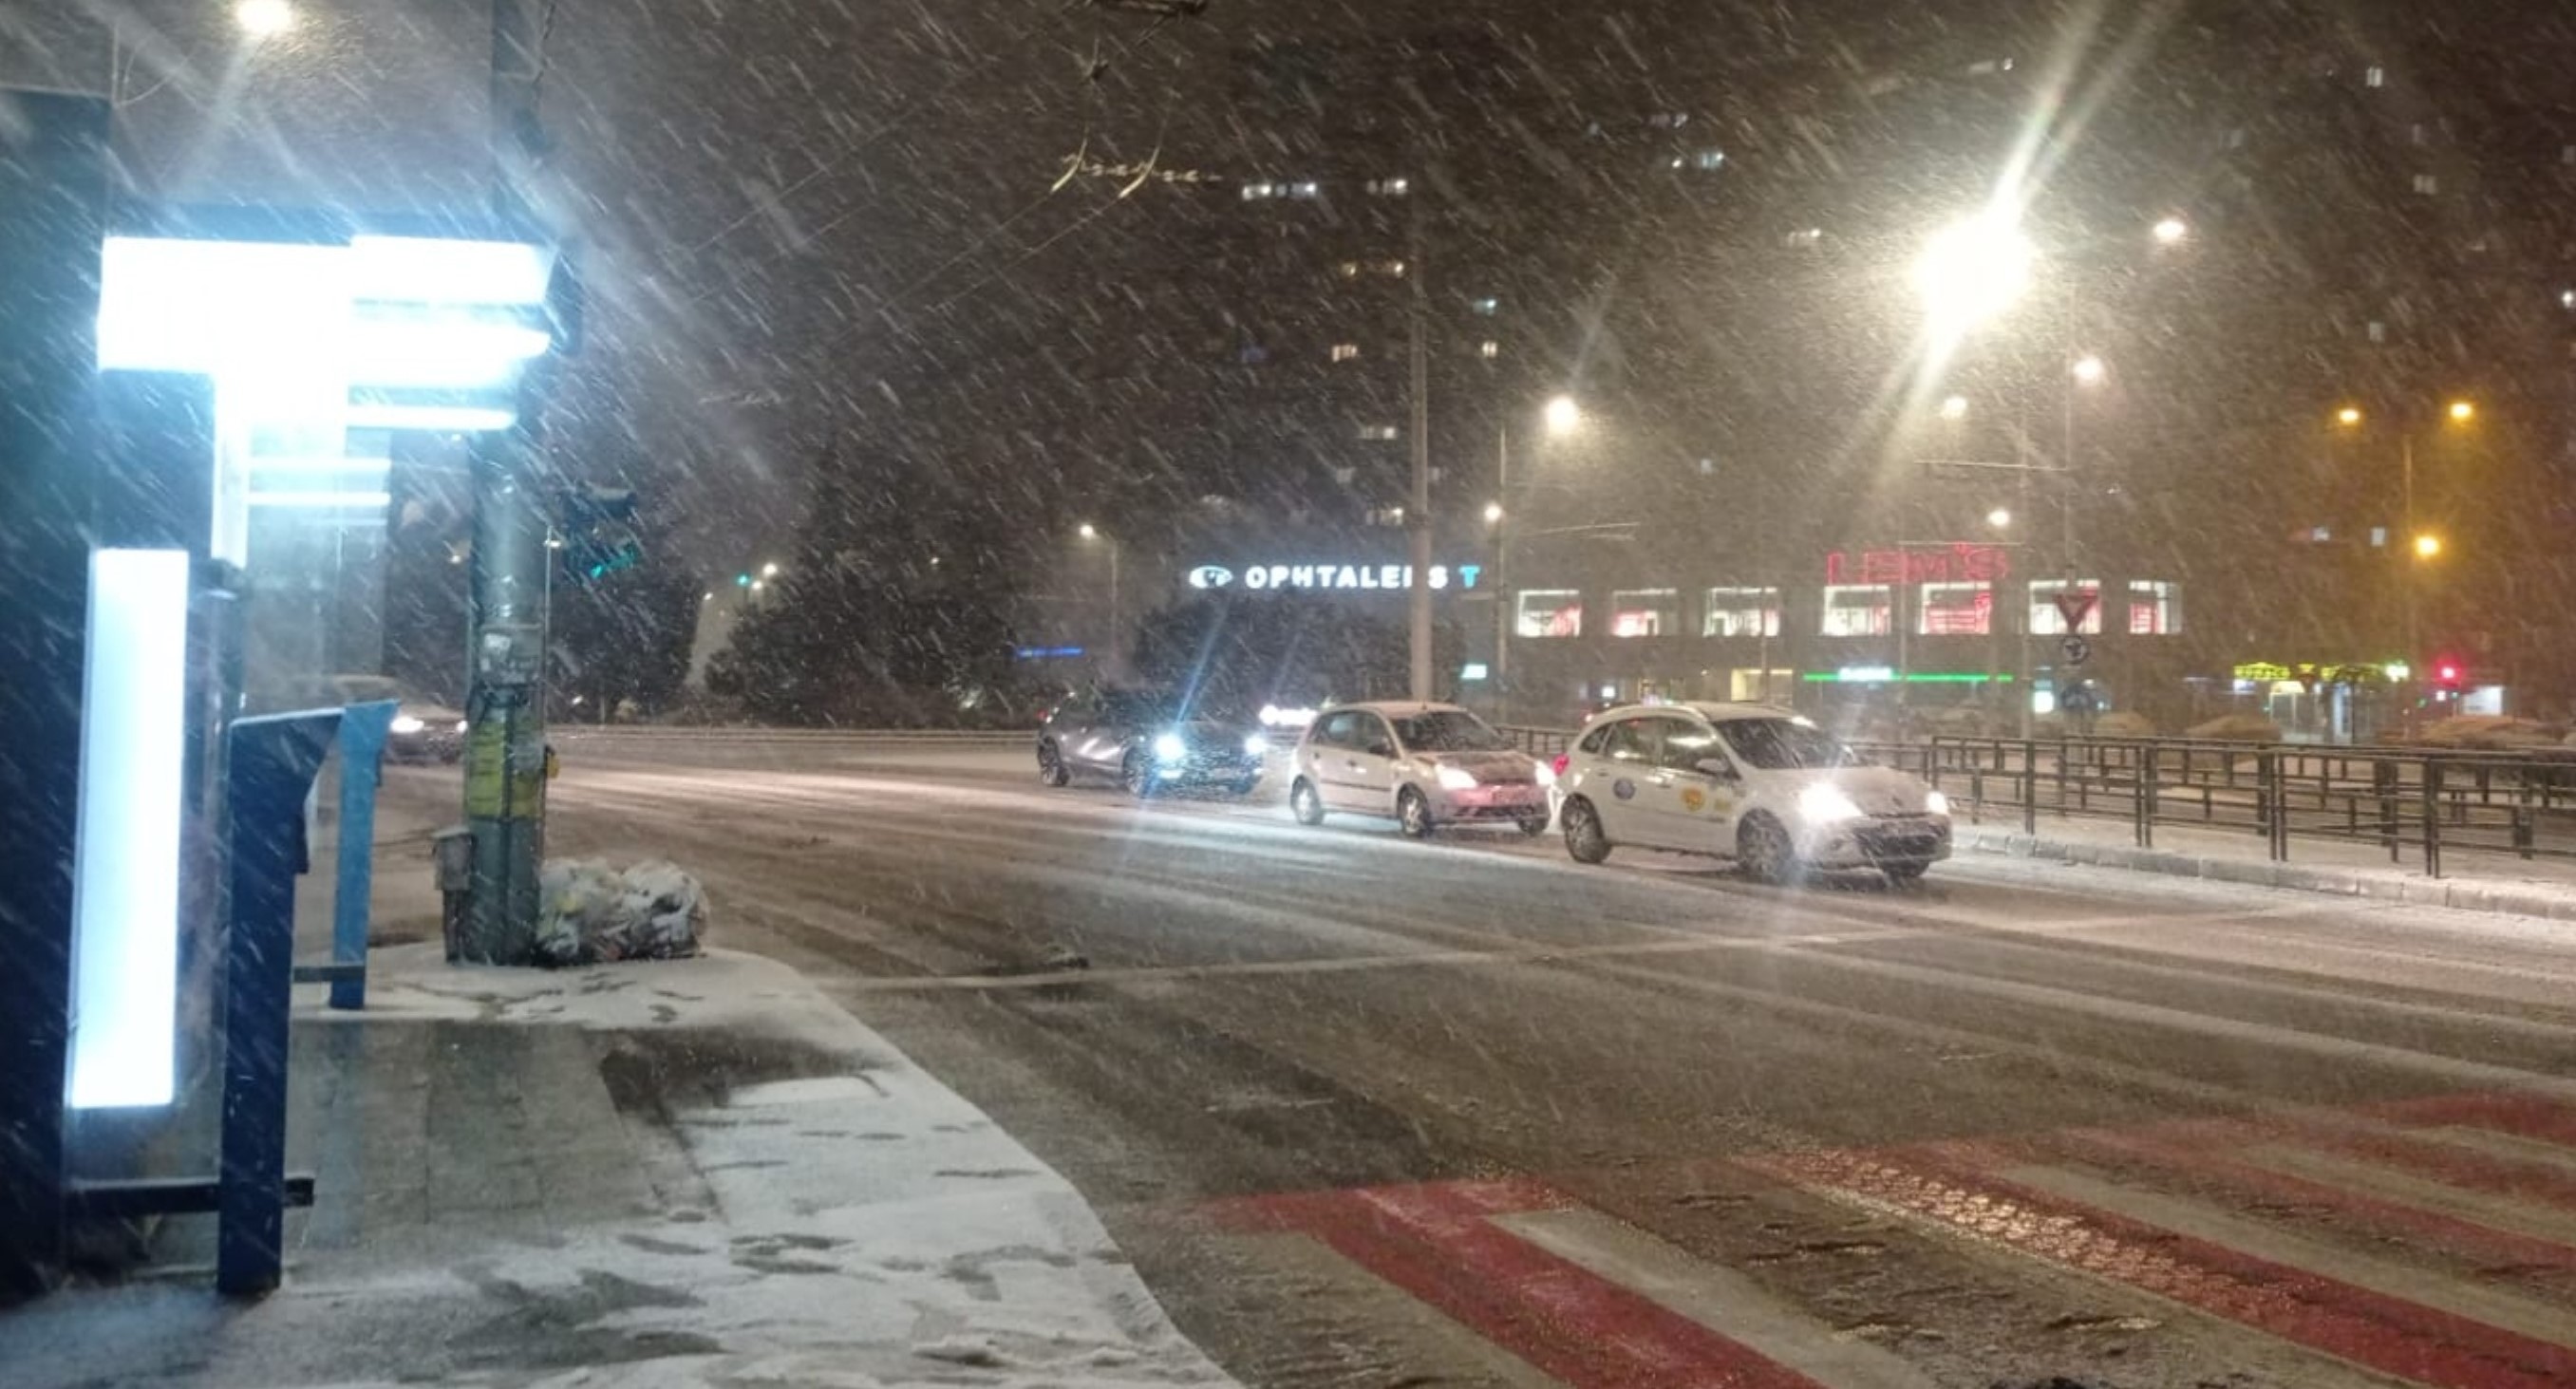 După mai multe zile în care temperaturile au fost mai ridicate pentru data din calendar, iarna a revenit în Cluj-Napoca/ Foto: monitorulcj.ro